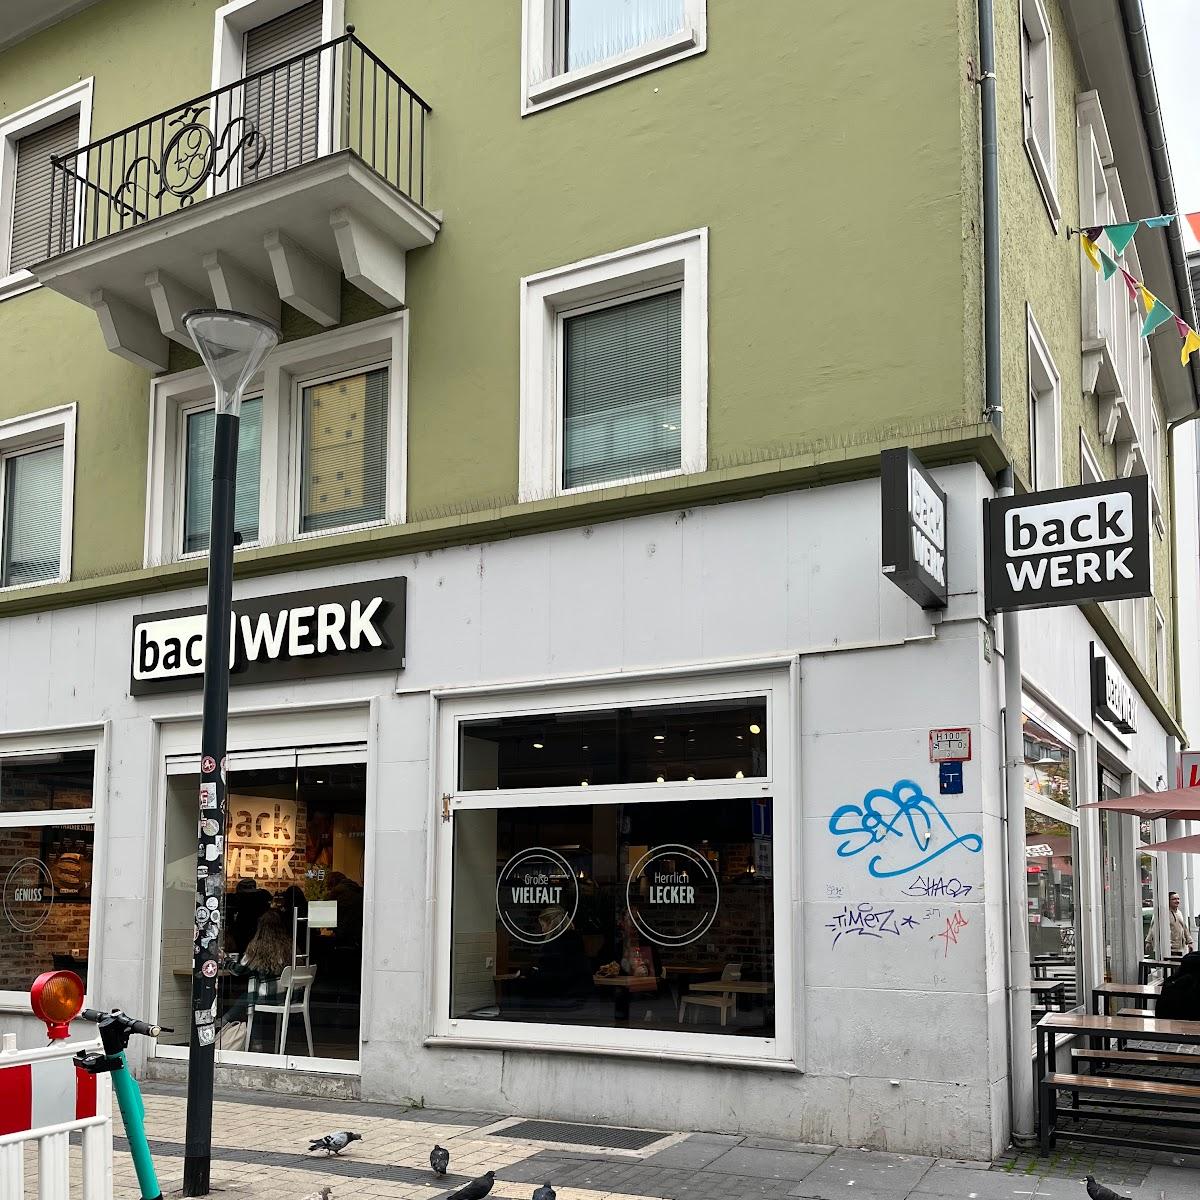 Restaurant "BackWerk" in Kaiserslautern